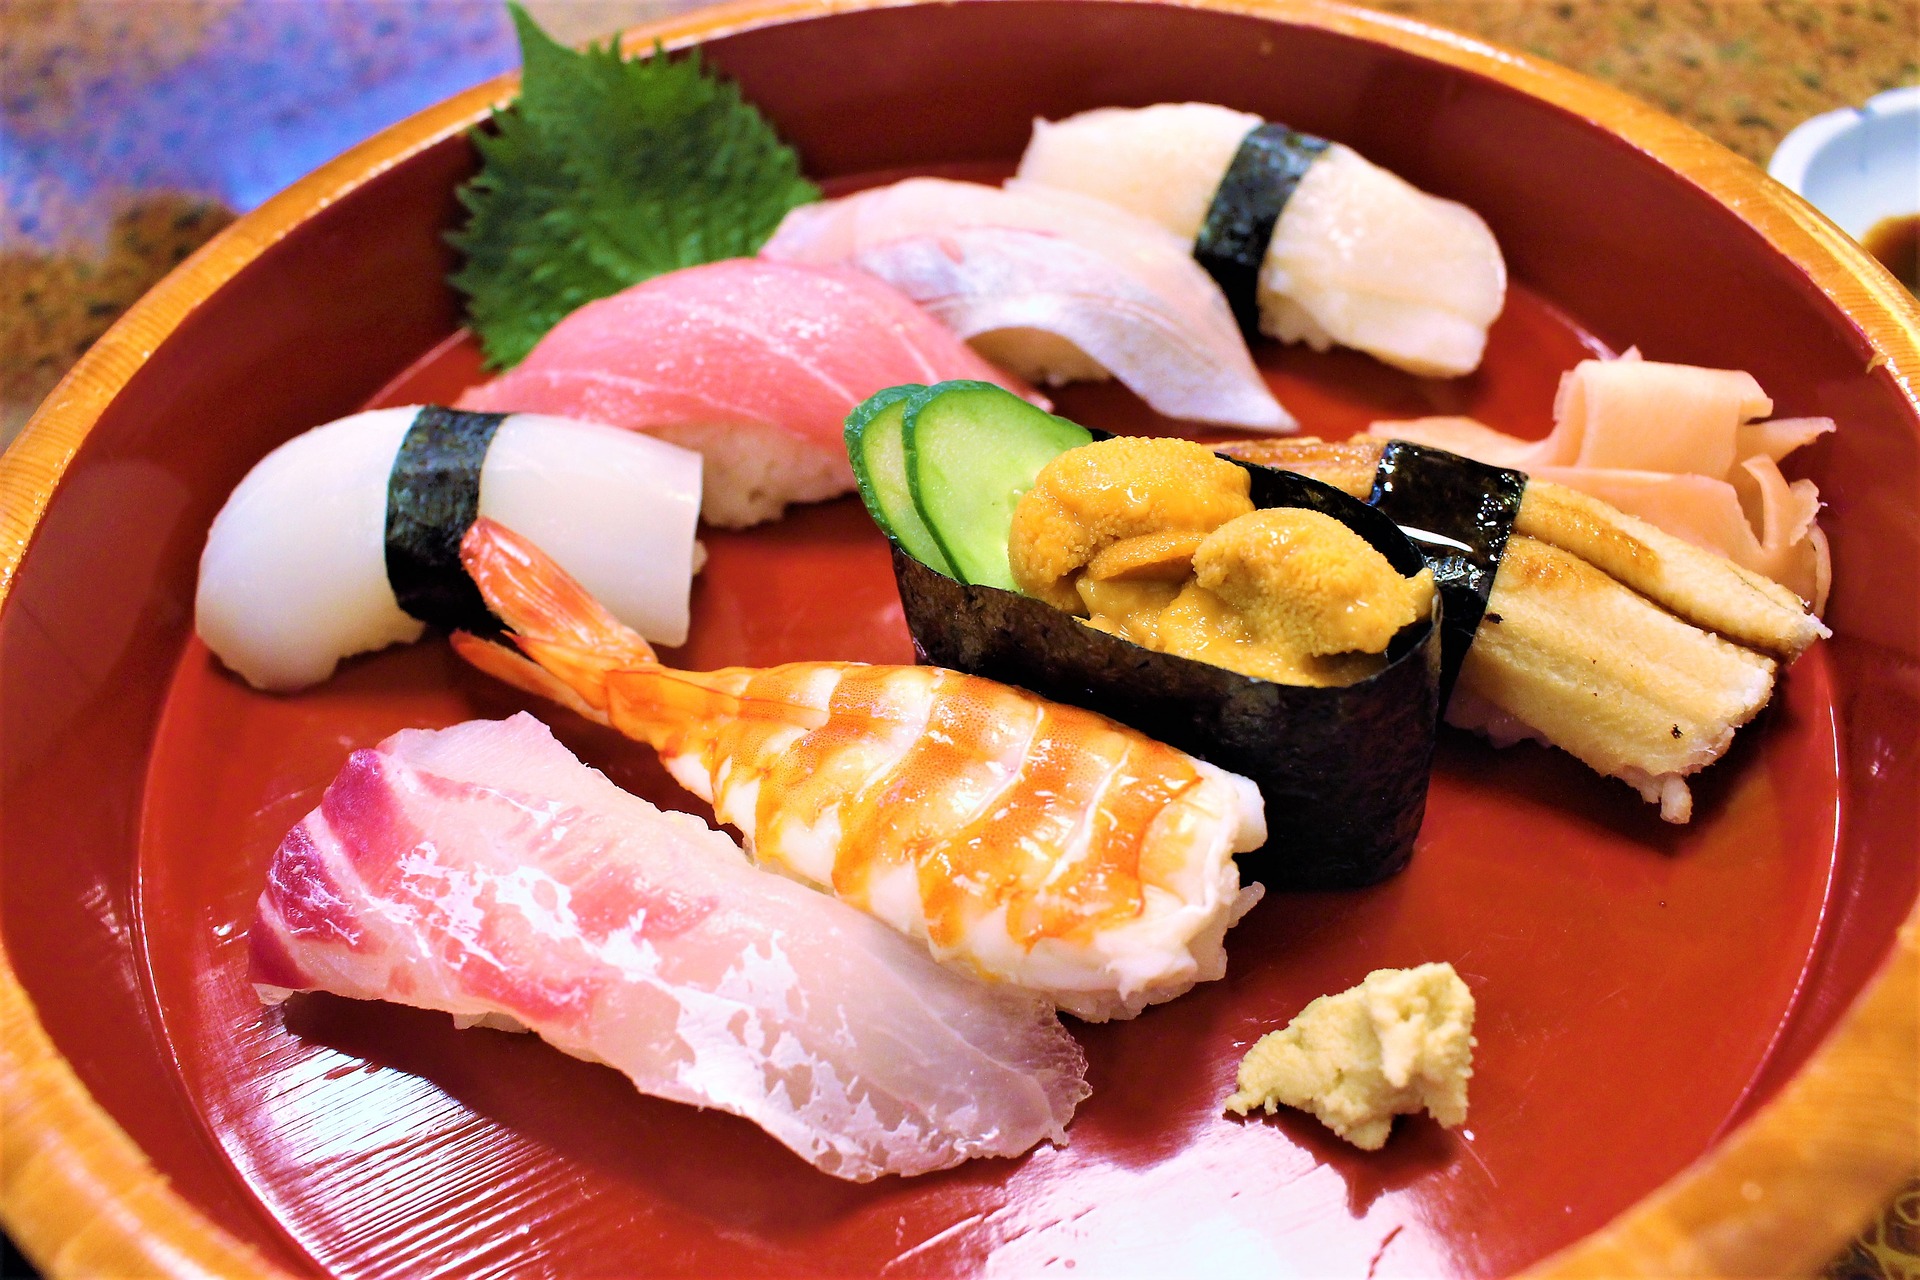 寿司 すし 発祥の地はどこ お寿司の起源や歴史をわかりやすく解説 プロテインズハンター